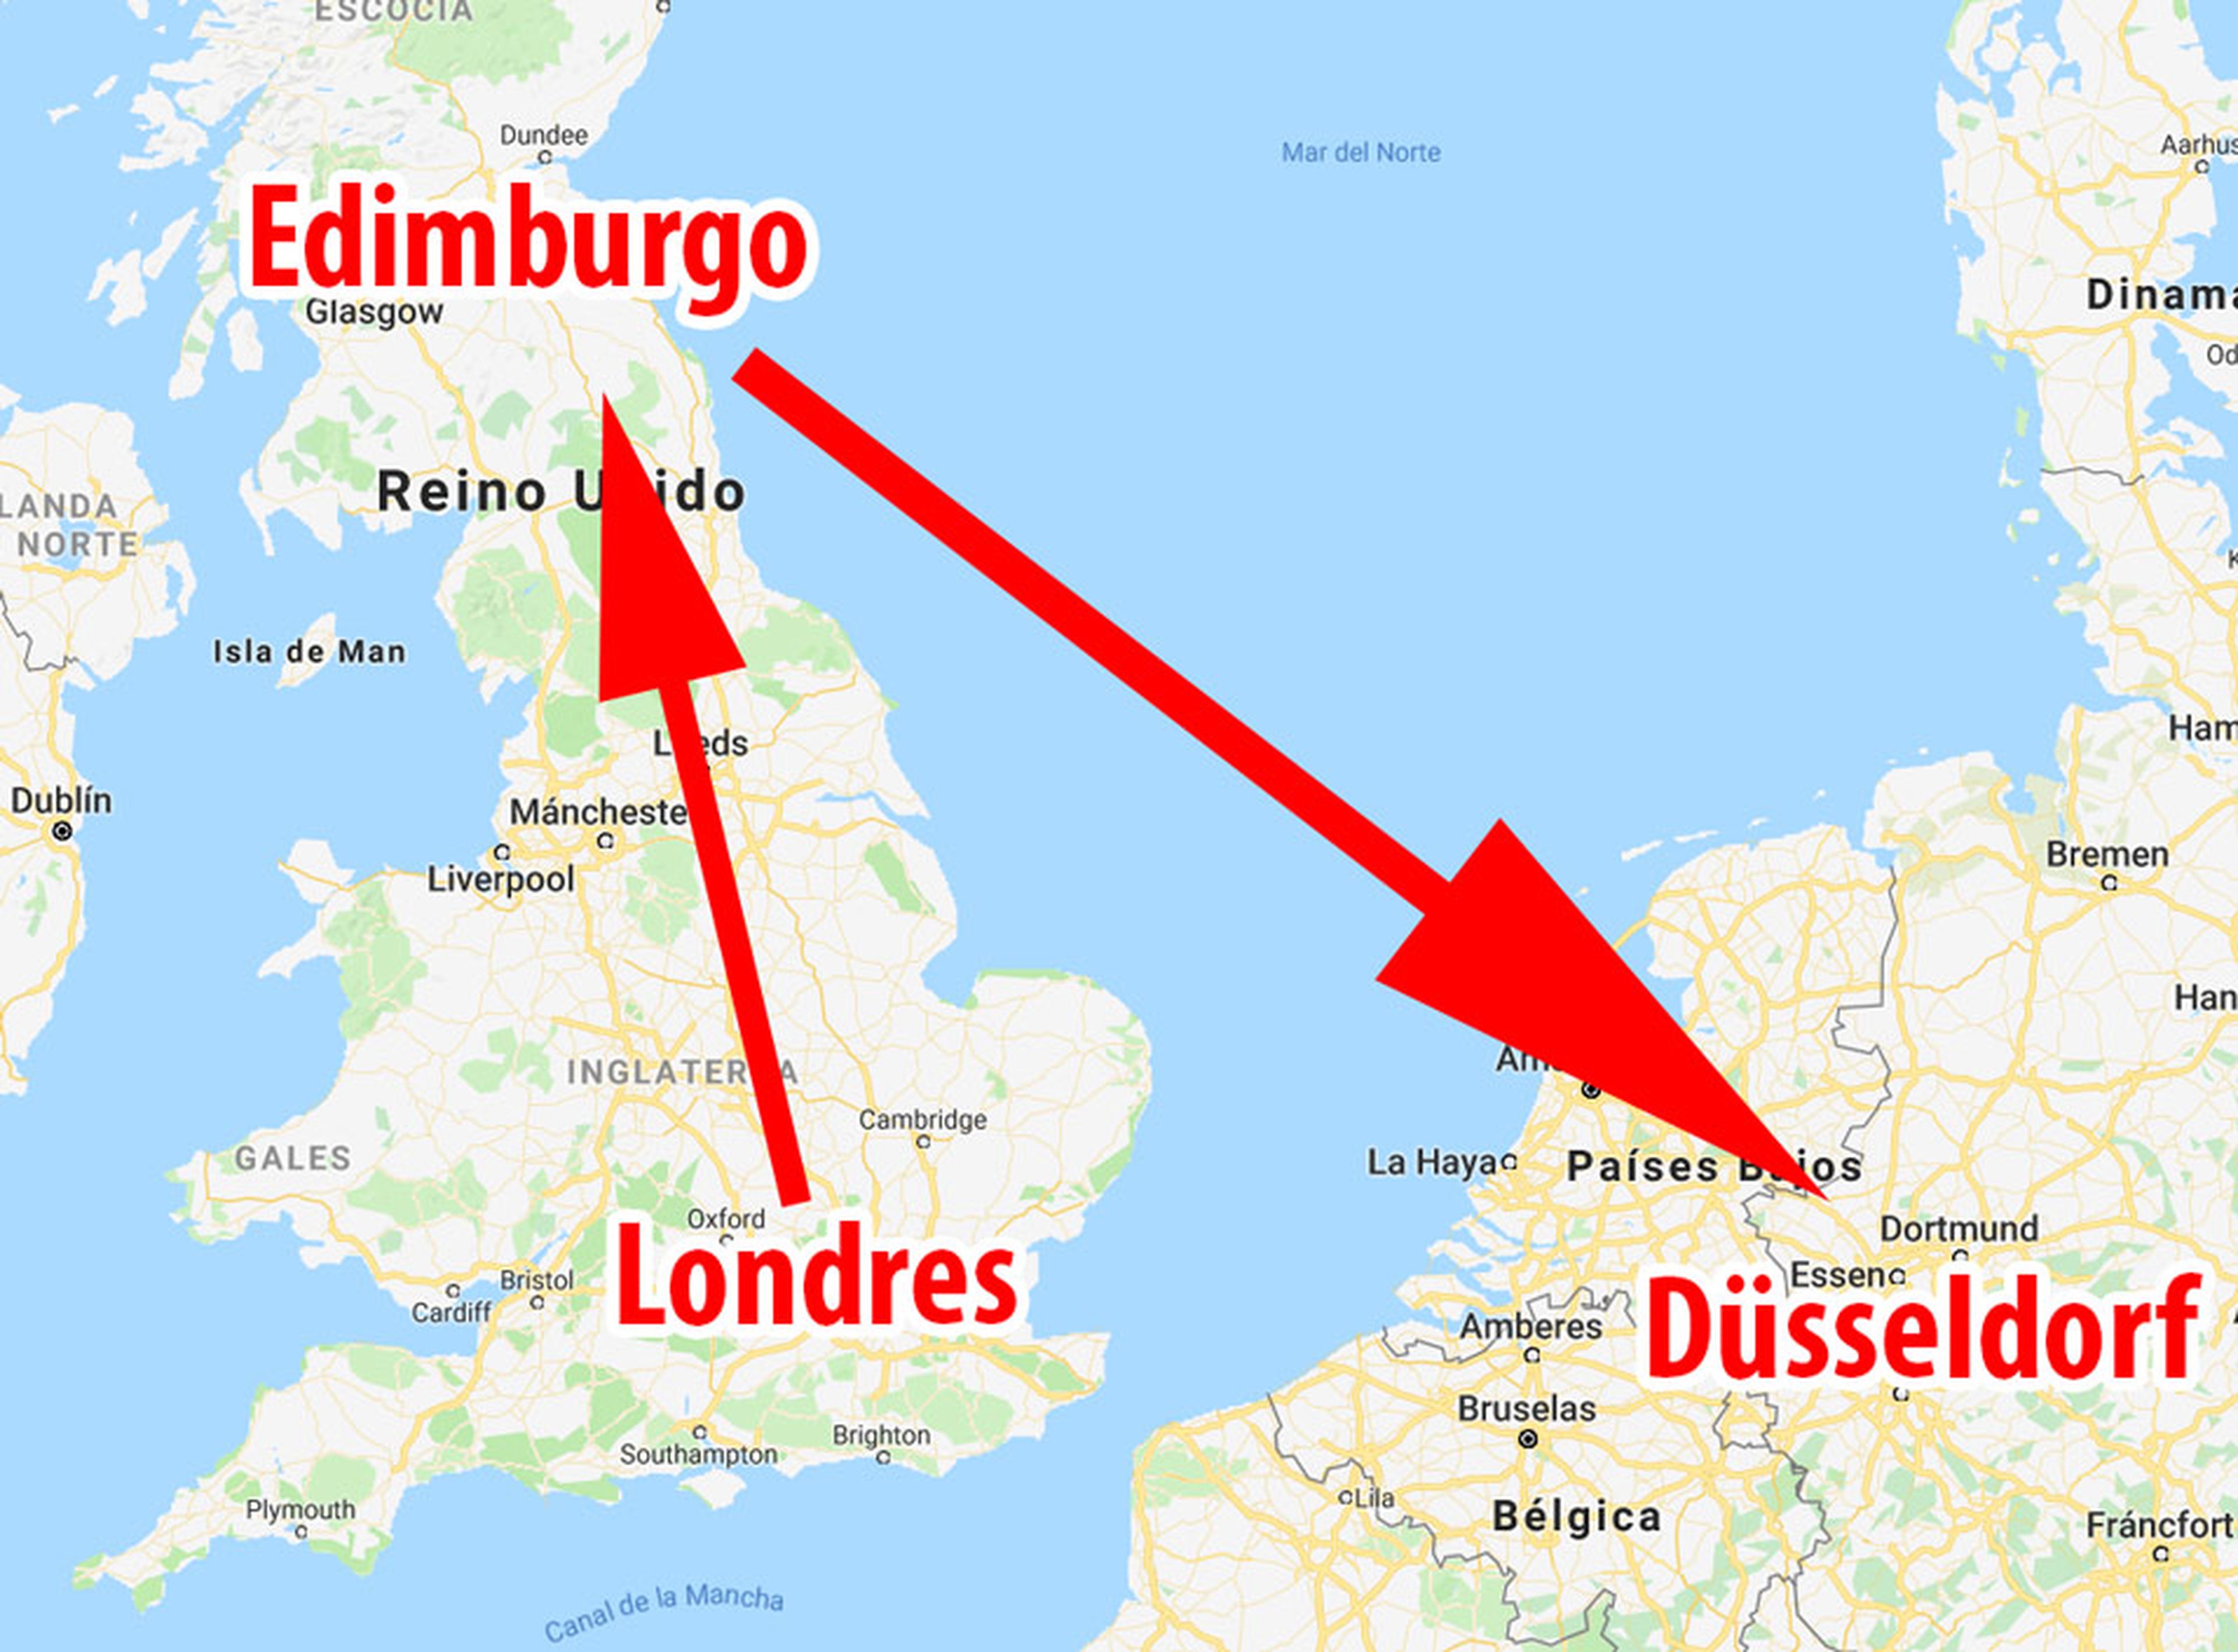 El vuelo que despegó de Londres debía aterrizar en Dusseldorf, pero en su lugar acabo pisando tierra en Edimburgo.